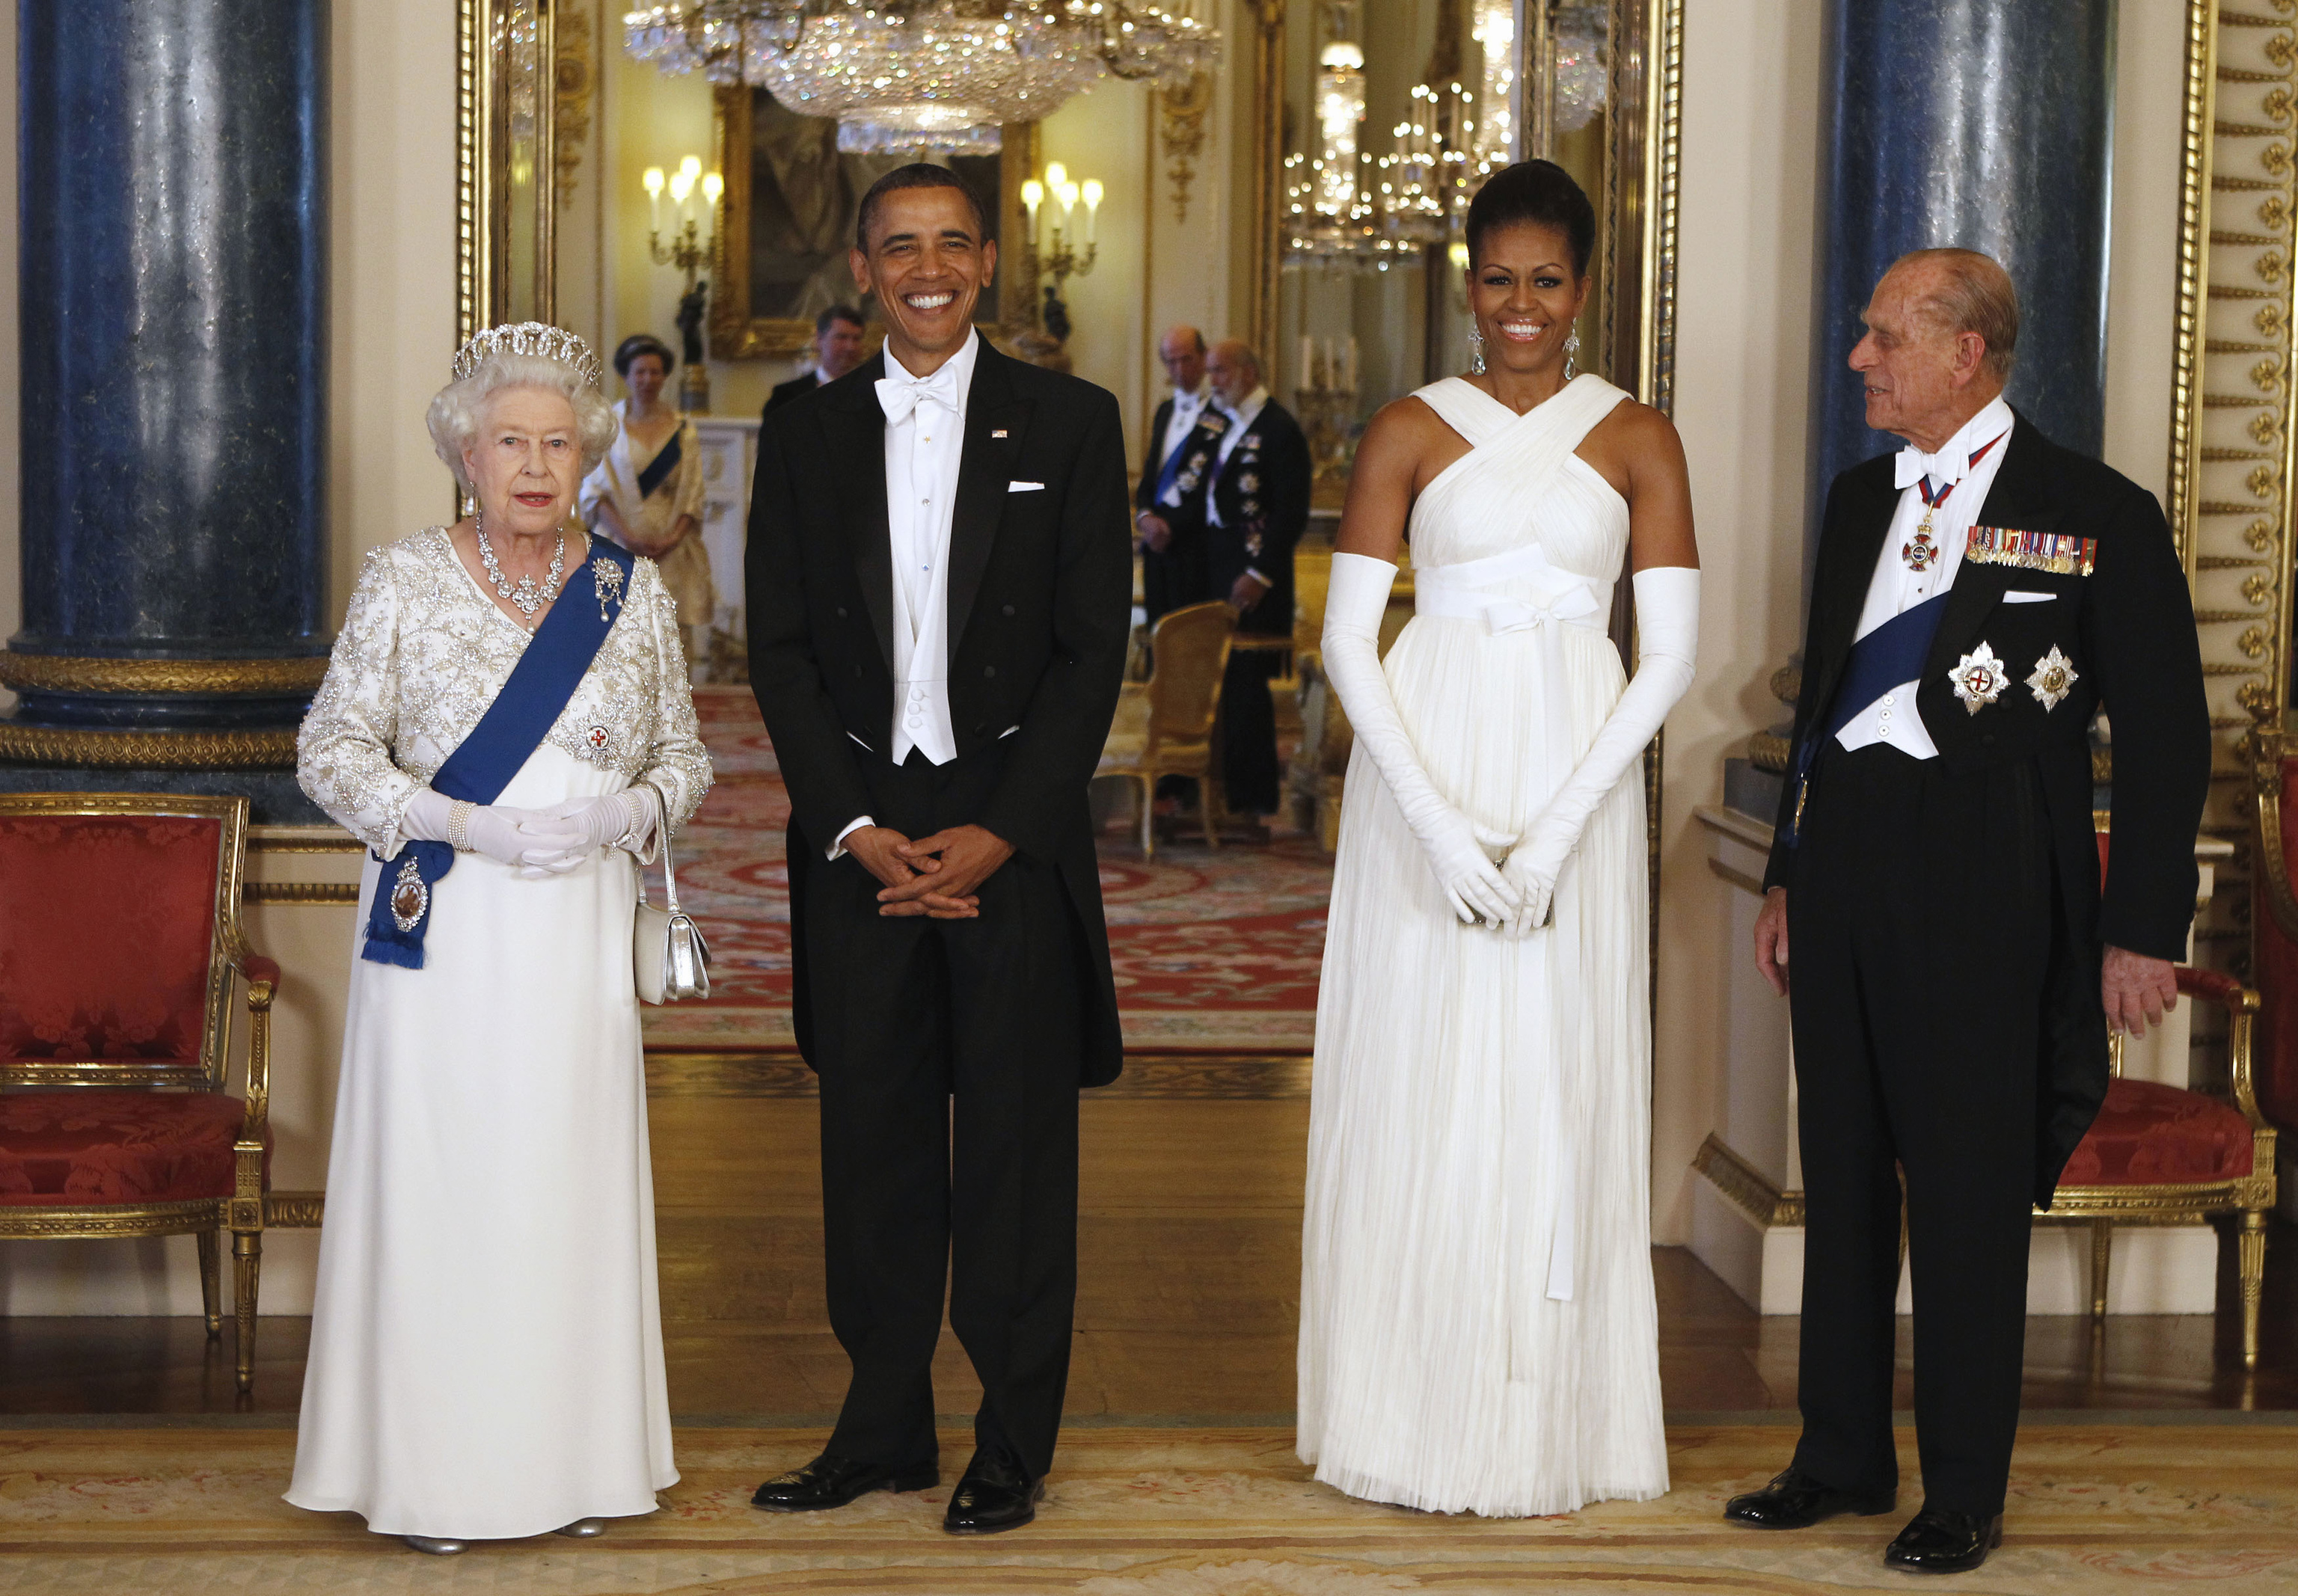 Isabel II y Barack Obama, la jefa reptiliana de los illuminati y su lacayo según las teorías conspirativas.